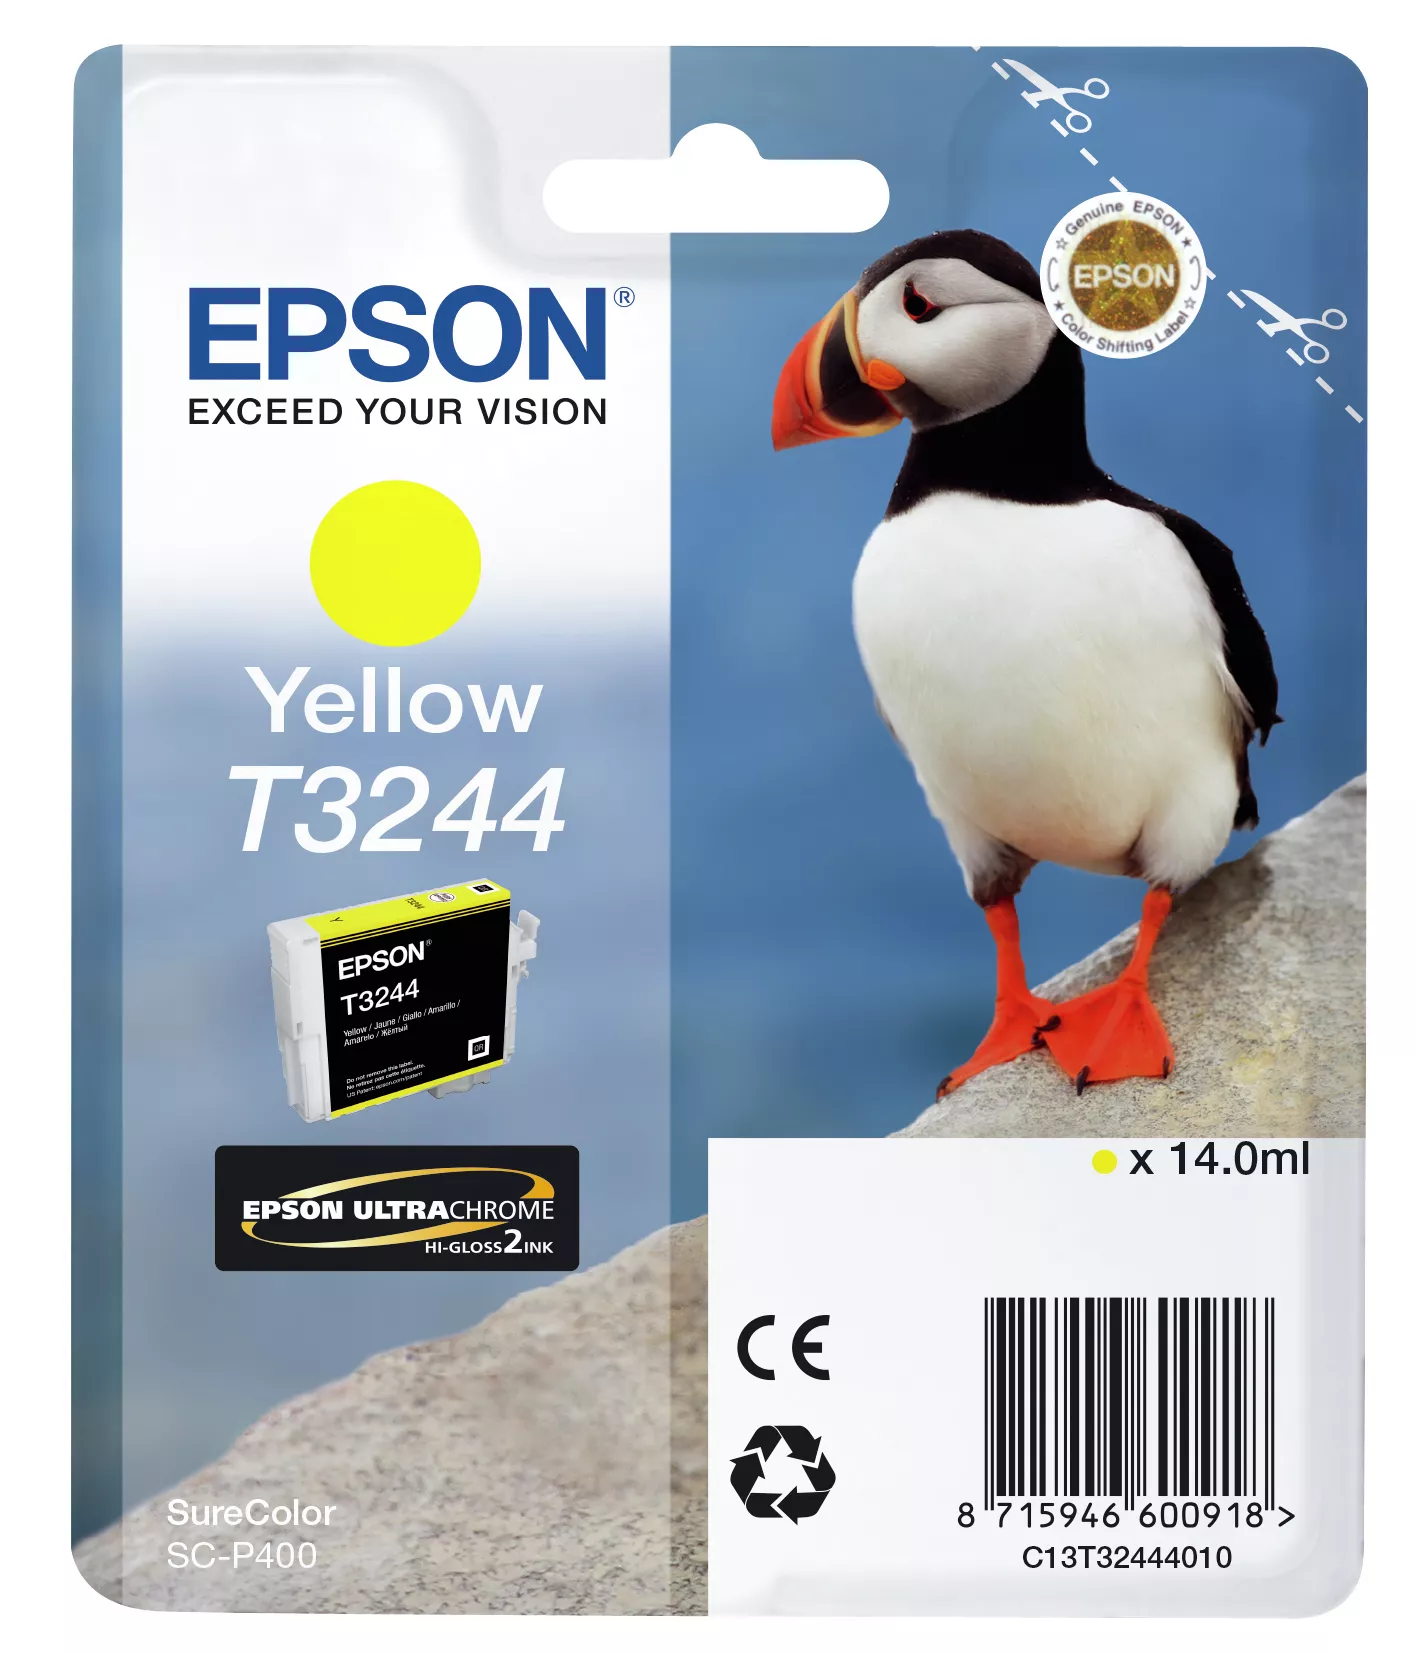 Achat EPSON Cartouche T3244 - Jaune 980 pages au meilleur prix